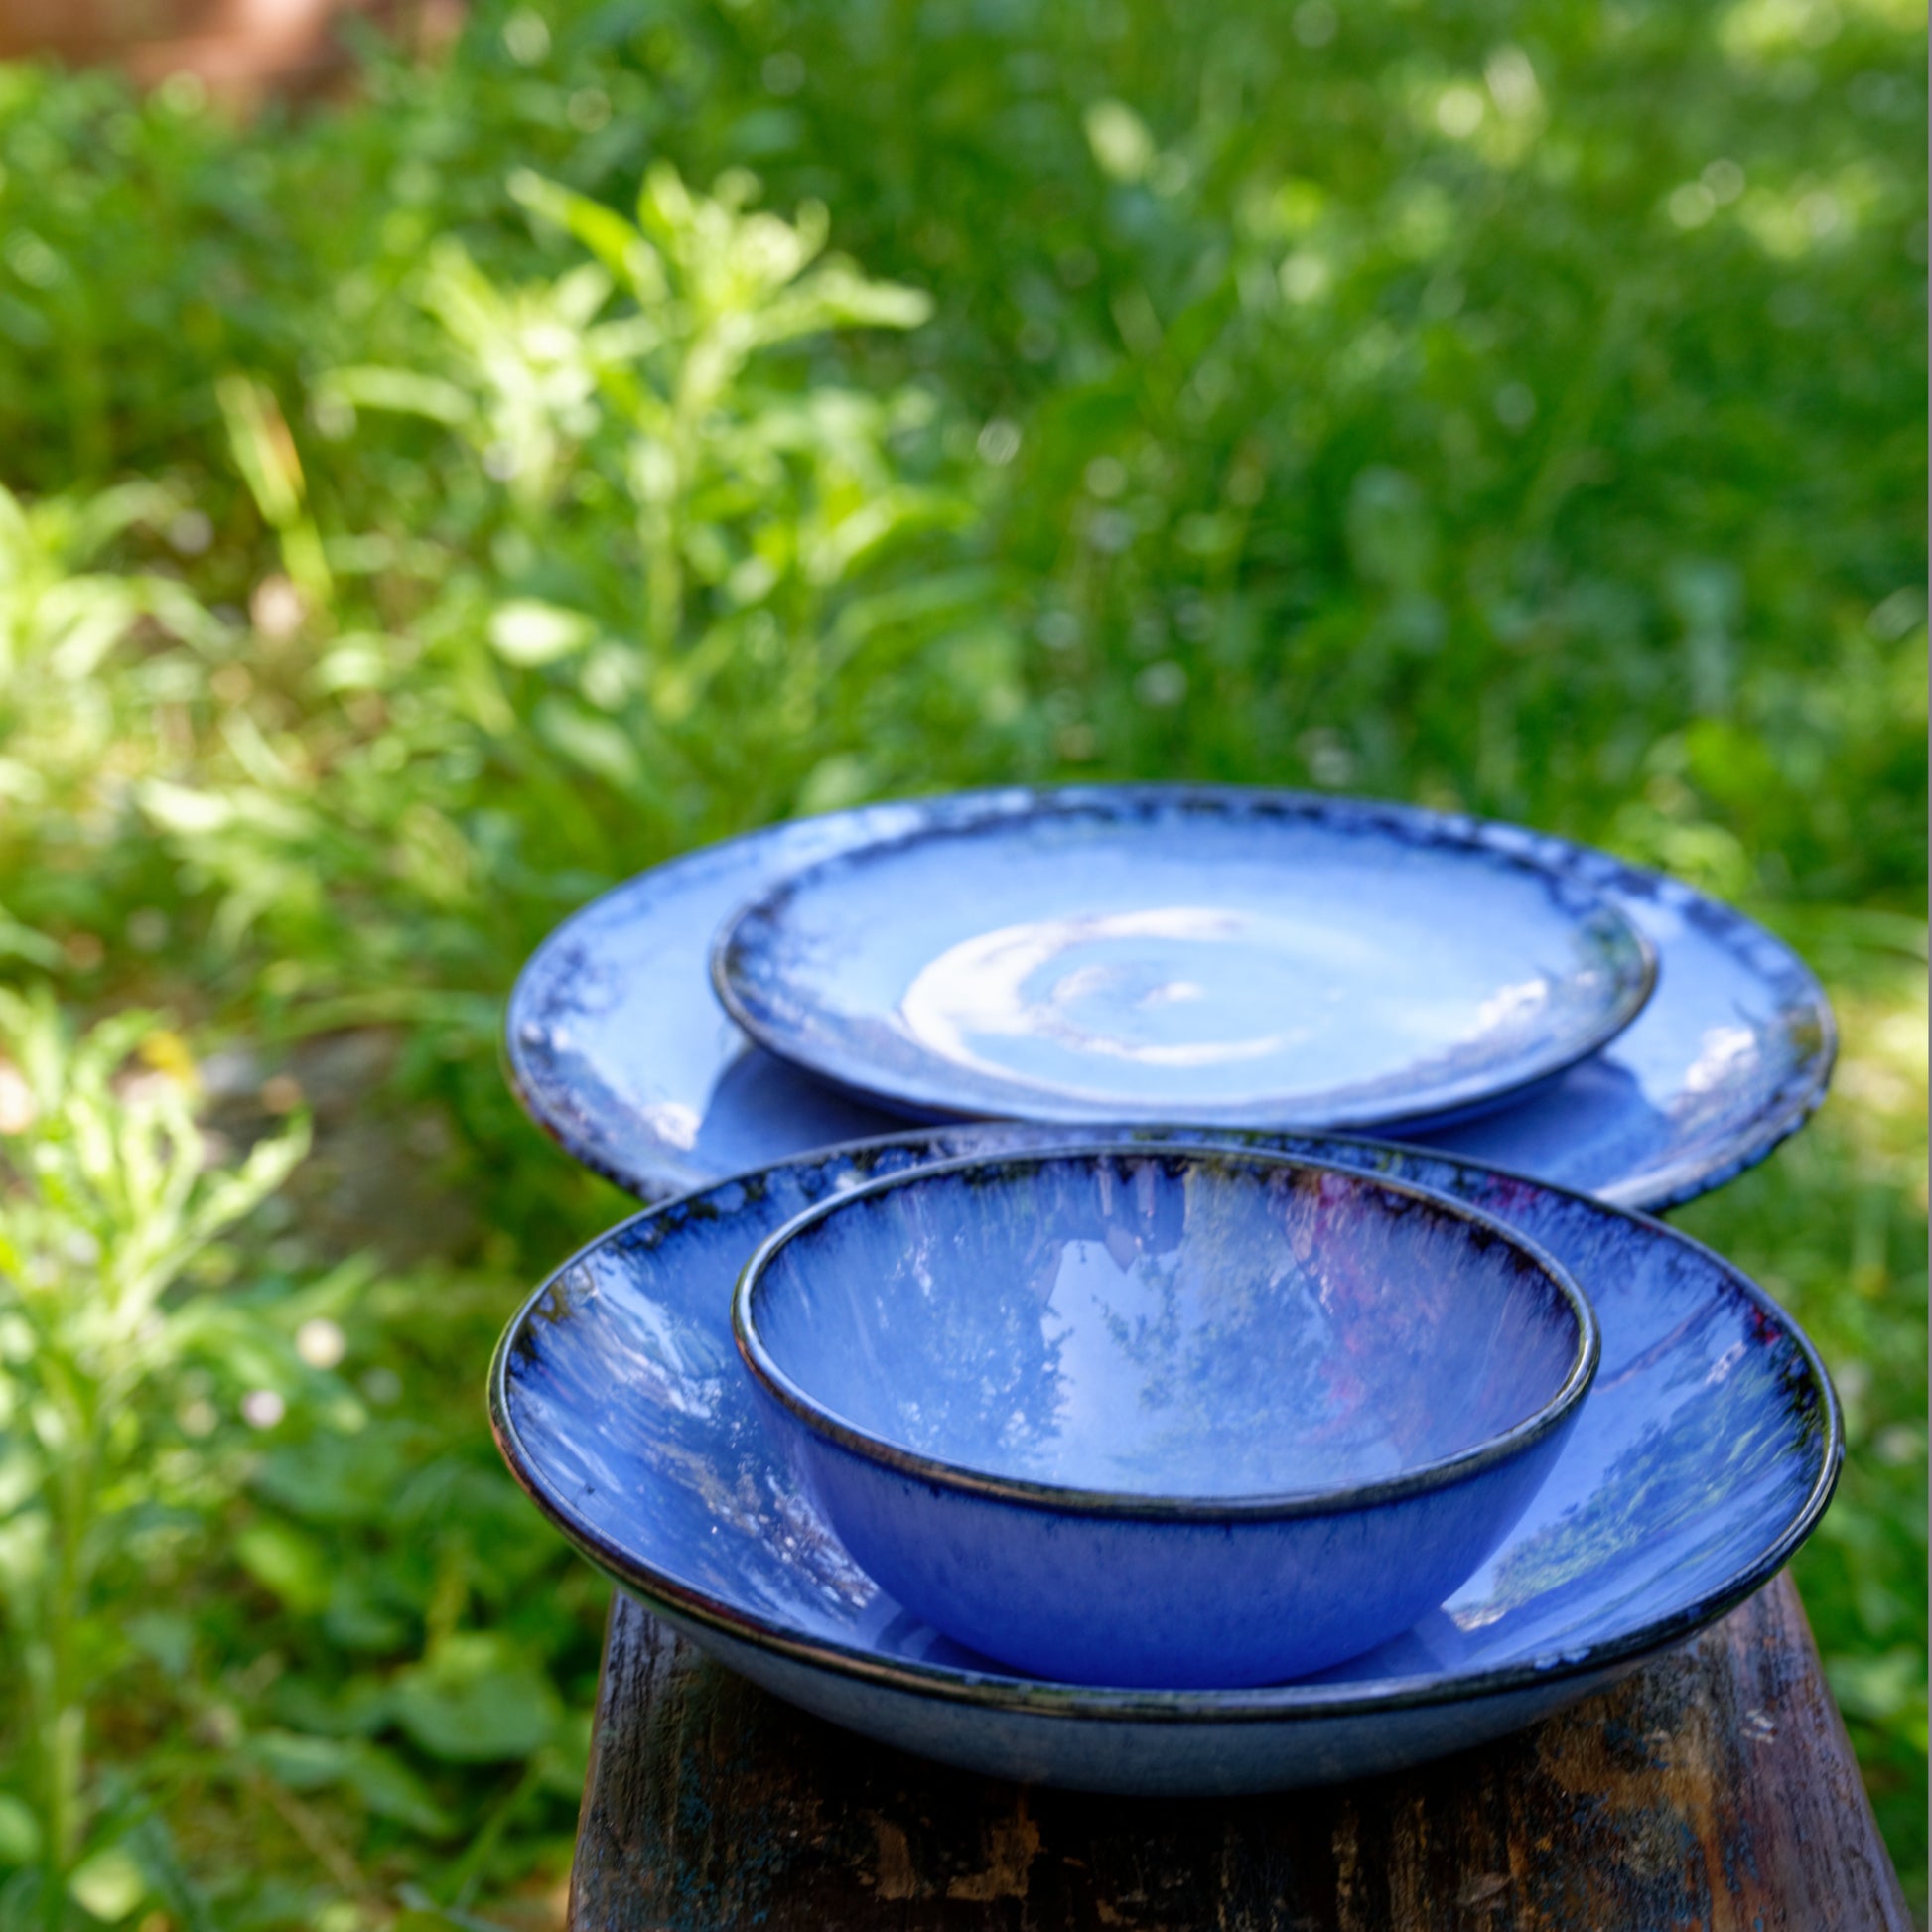 Petite assiette  Bleu marin - Vaisselle en céramique du Portugal